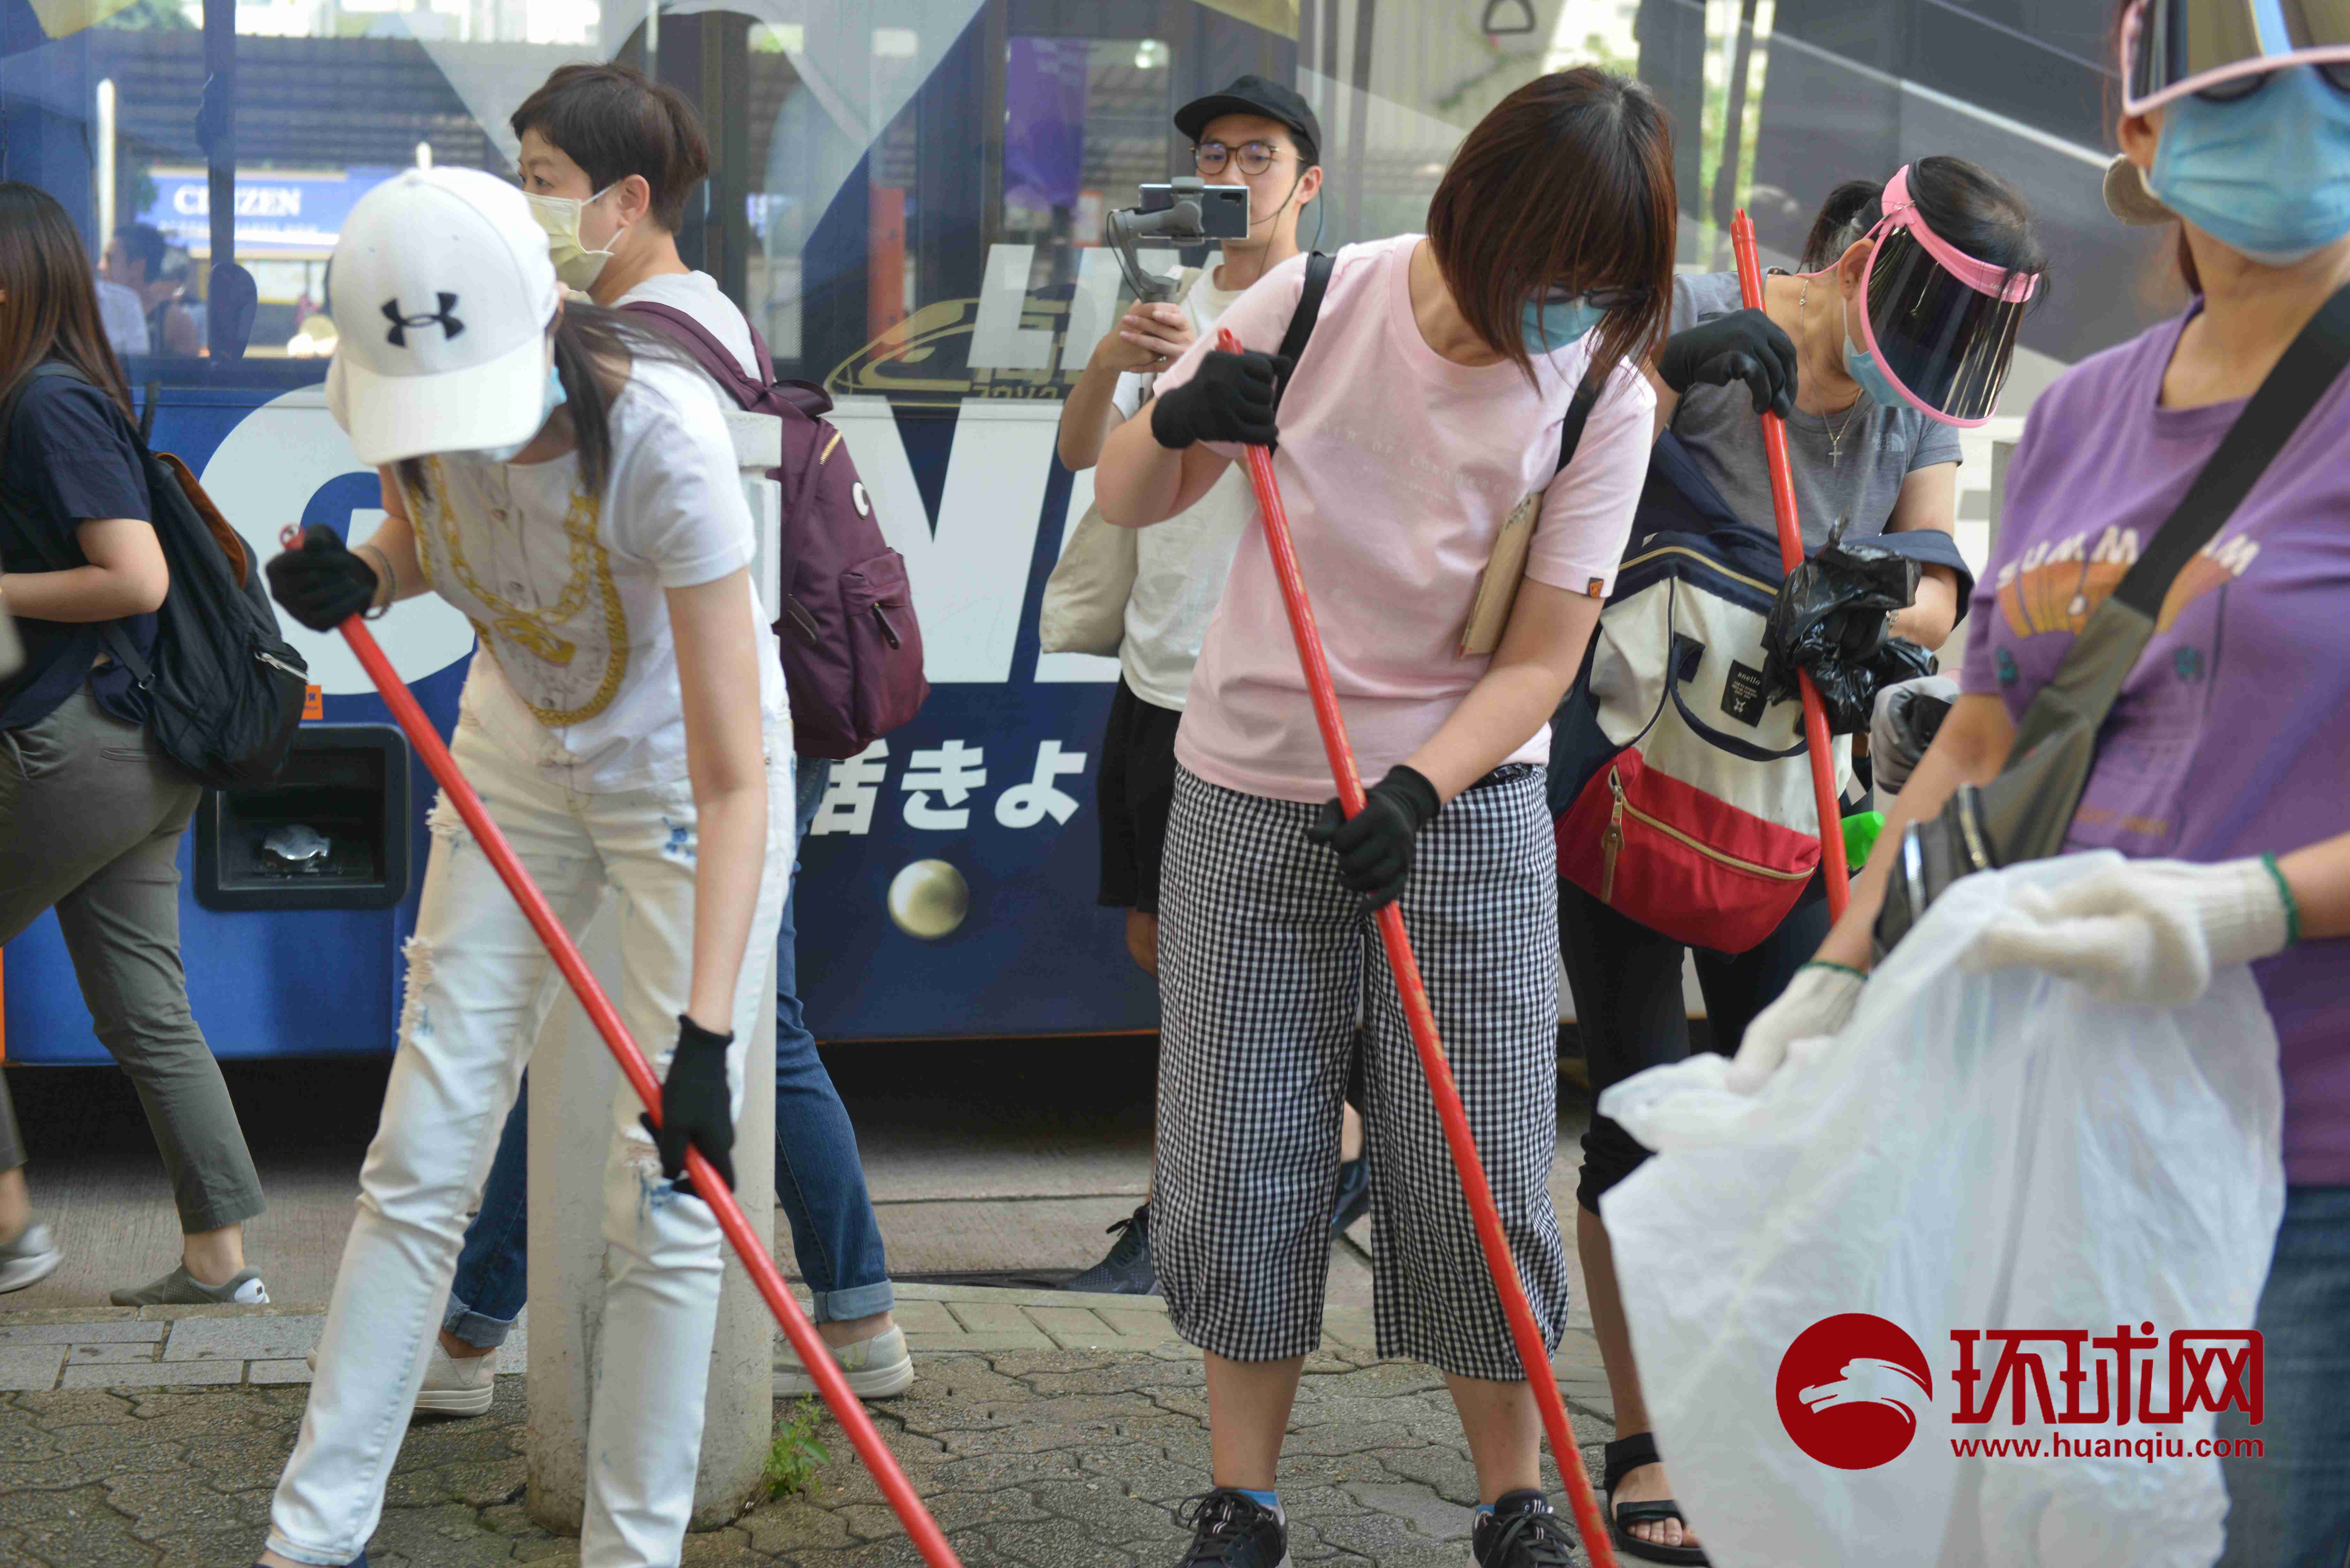 “全港清洁日”!香港市民自发清理反对派标语、海报等垃圾